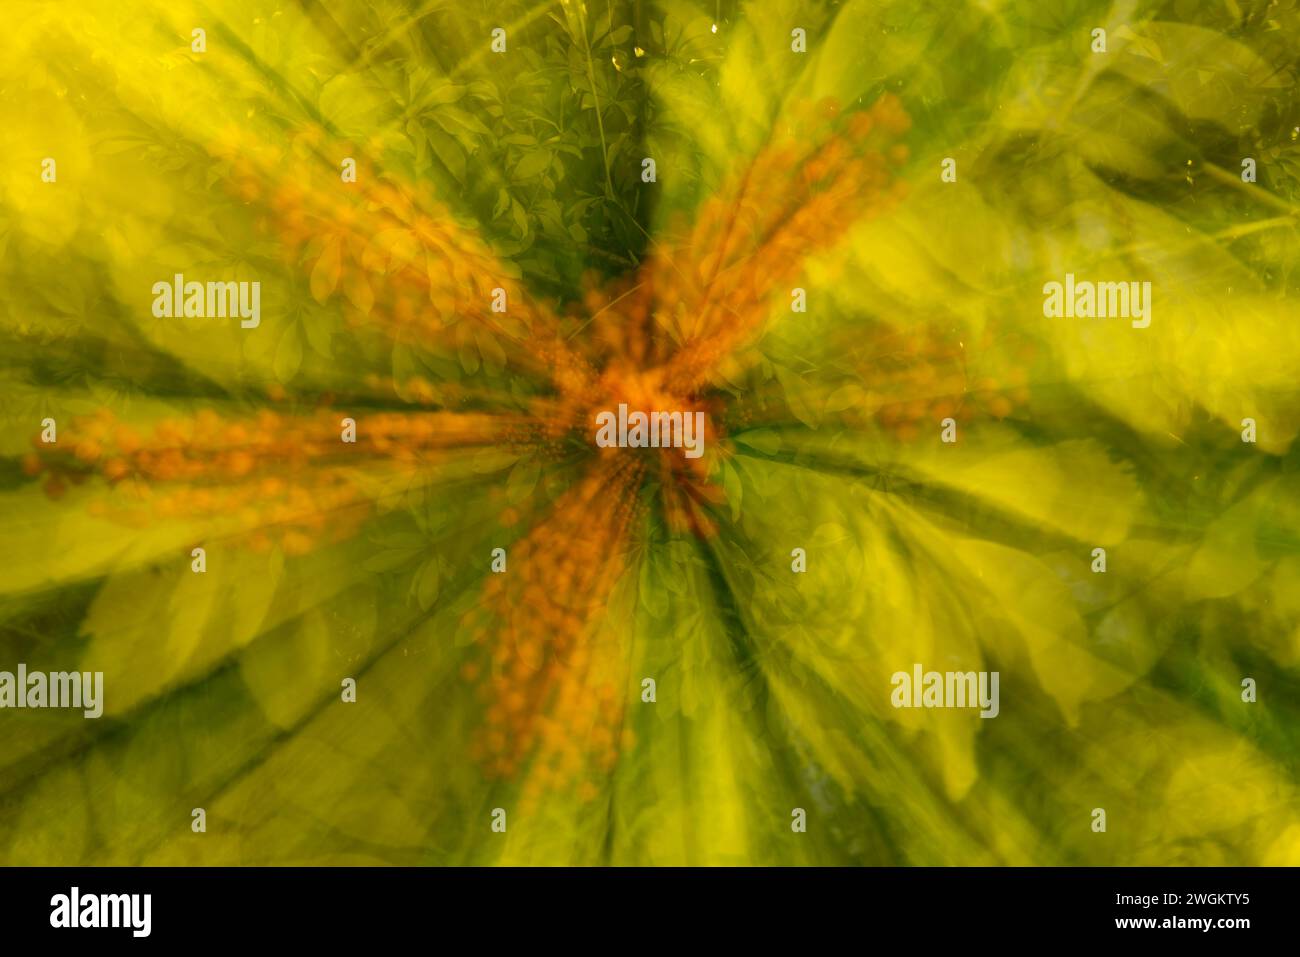 Image abstraite d'une plante verte et orange photographiée avec un mouvement intentionnel de caméra en zoomant vers l'arrière. Banque D'Images